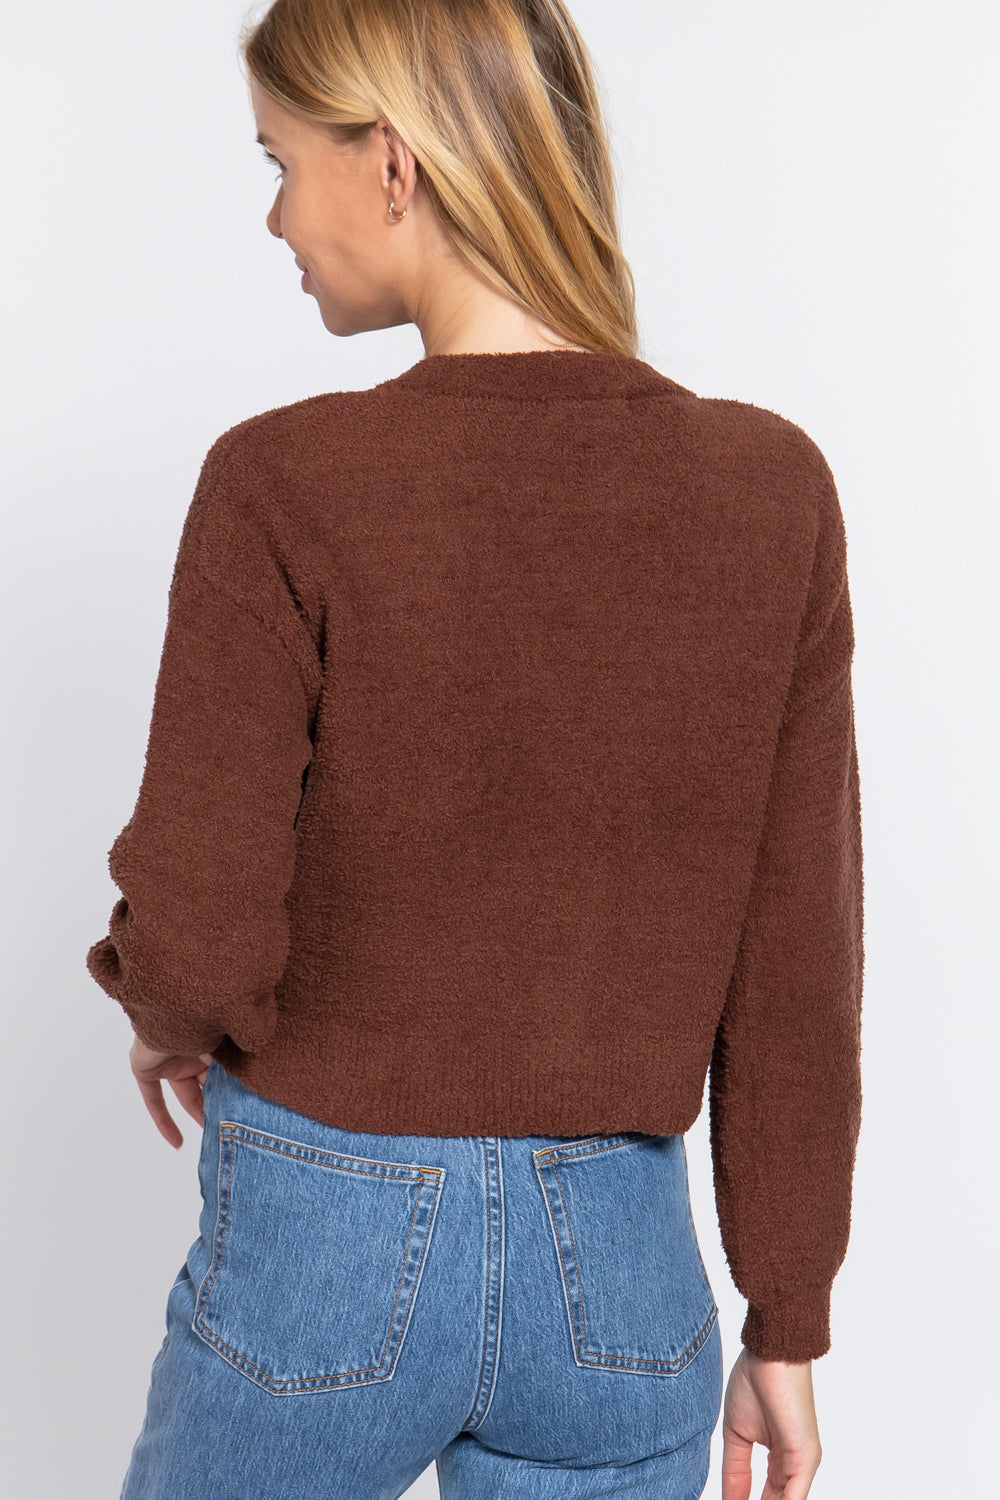 Long Sleeve V-neck Sweater Cardigan